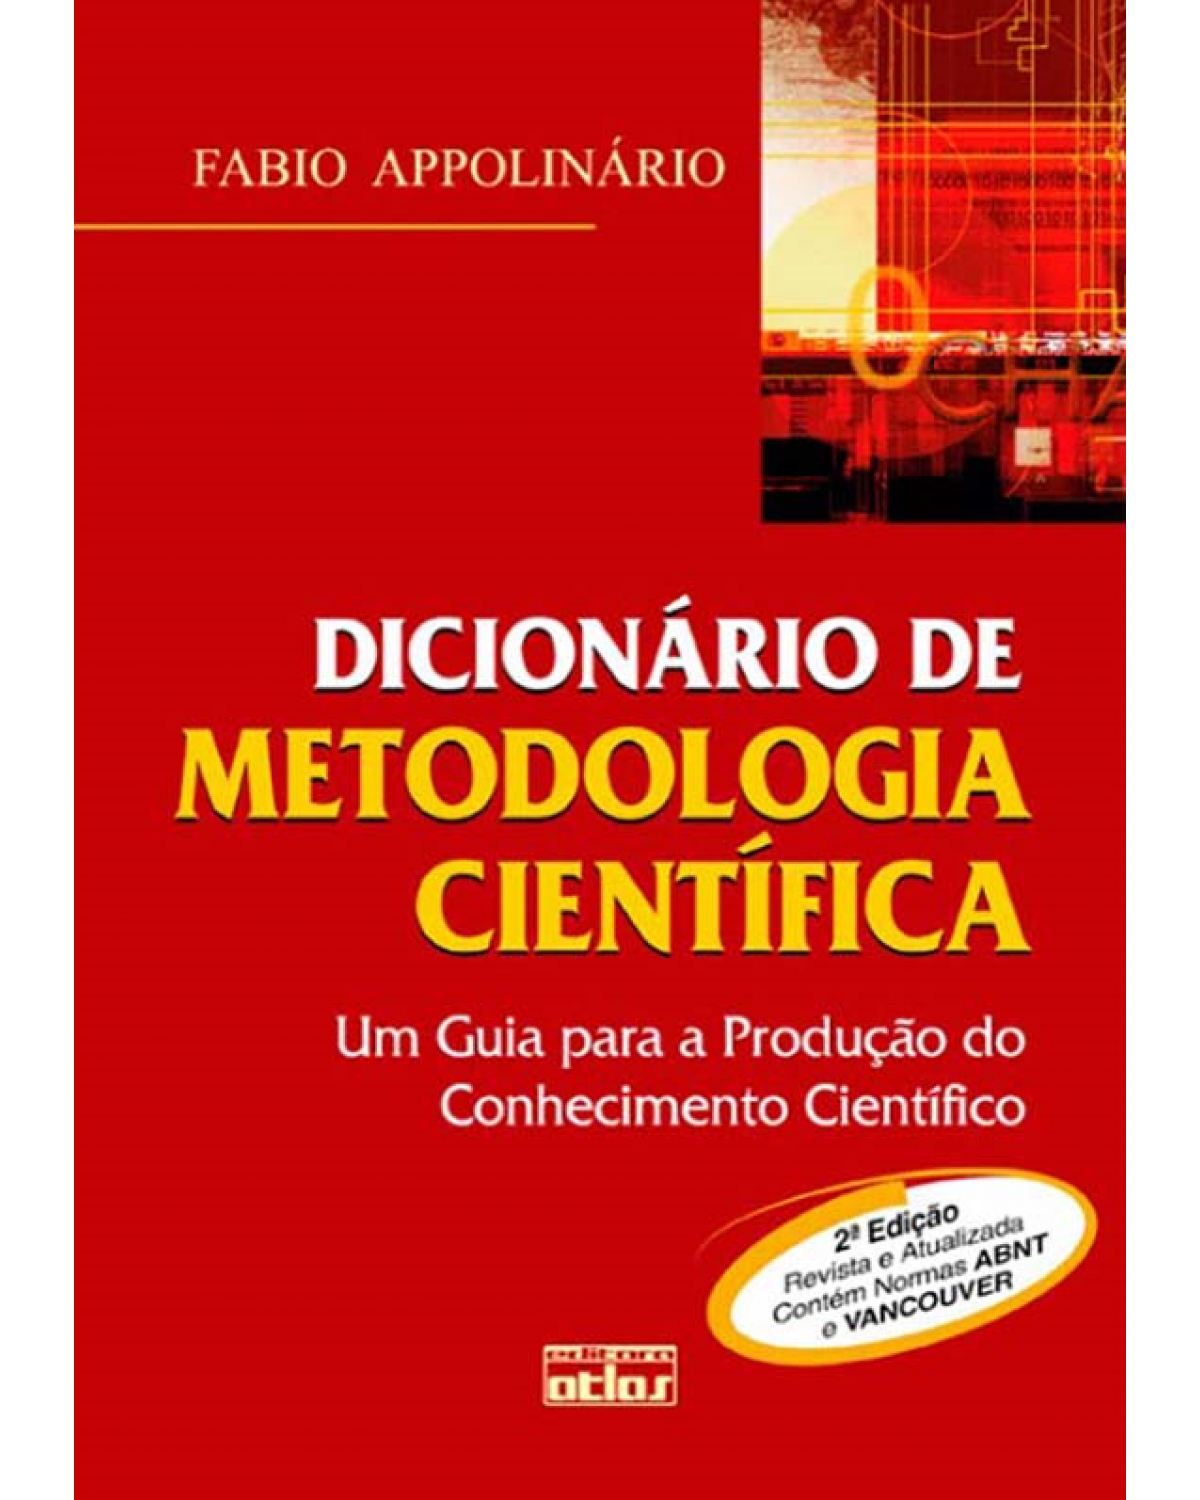 Dicionário de metodologia científica - Um guia para a produção do conhecimento científico - 2ª Edição | 2011